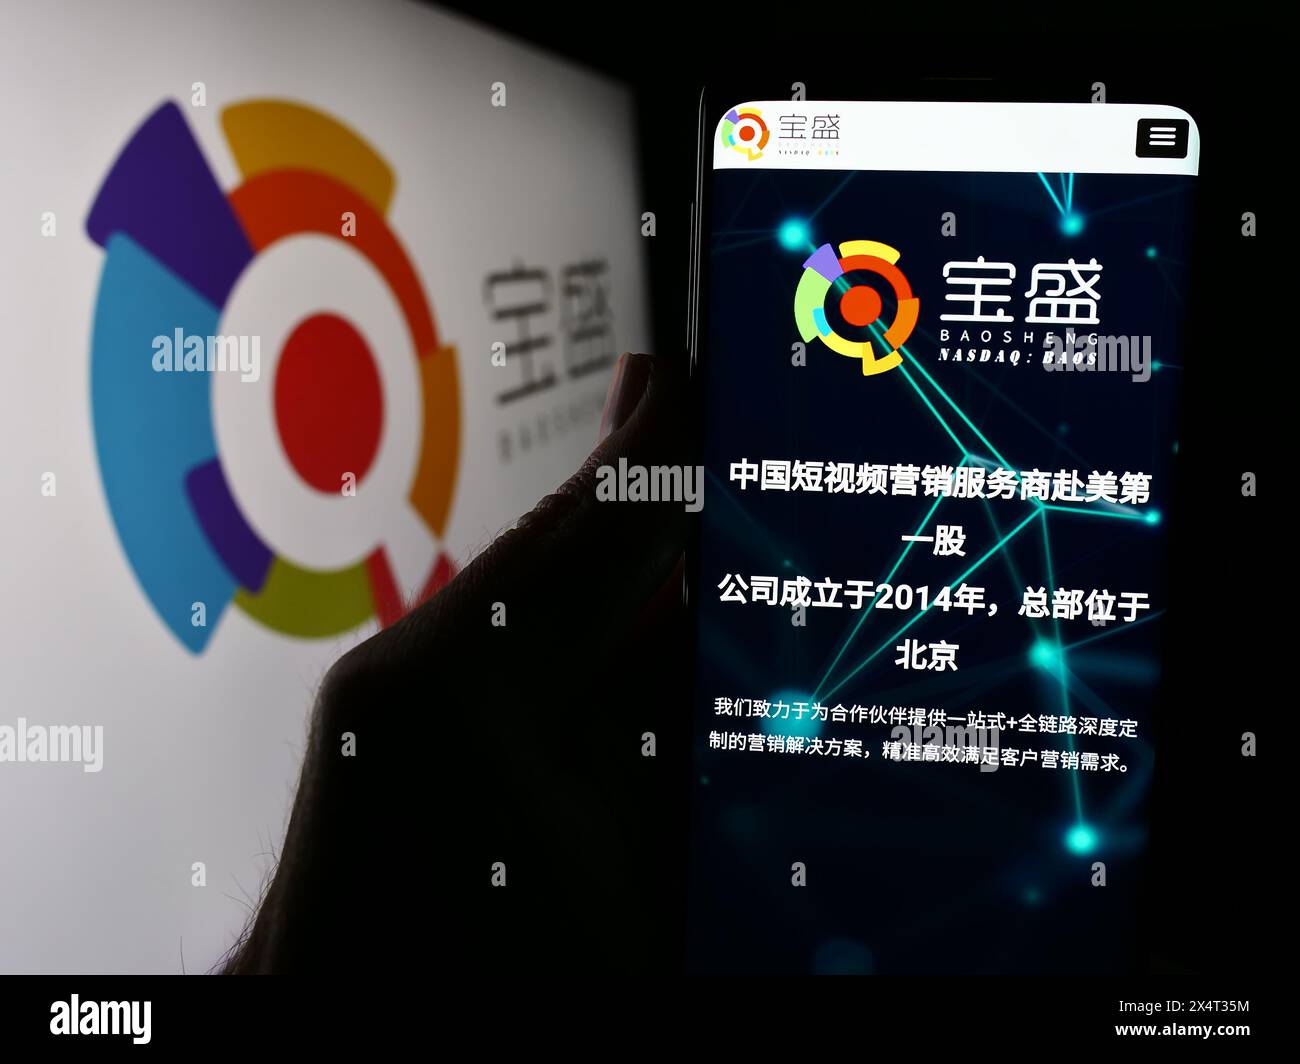 Persona che detiene un cellulare con pagina web della società cinese Baosheng Media Group Holdings Limited davanti al logo. Messa a fuoco al centro del display del telefono. Foto Stock